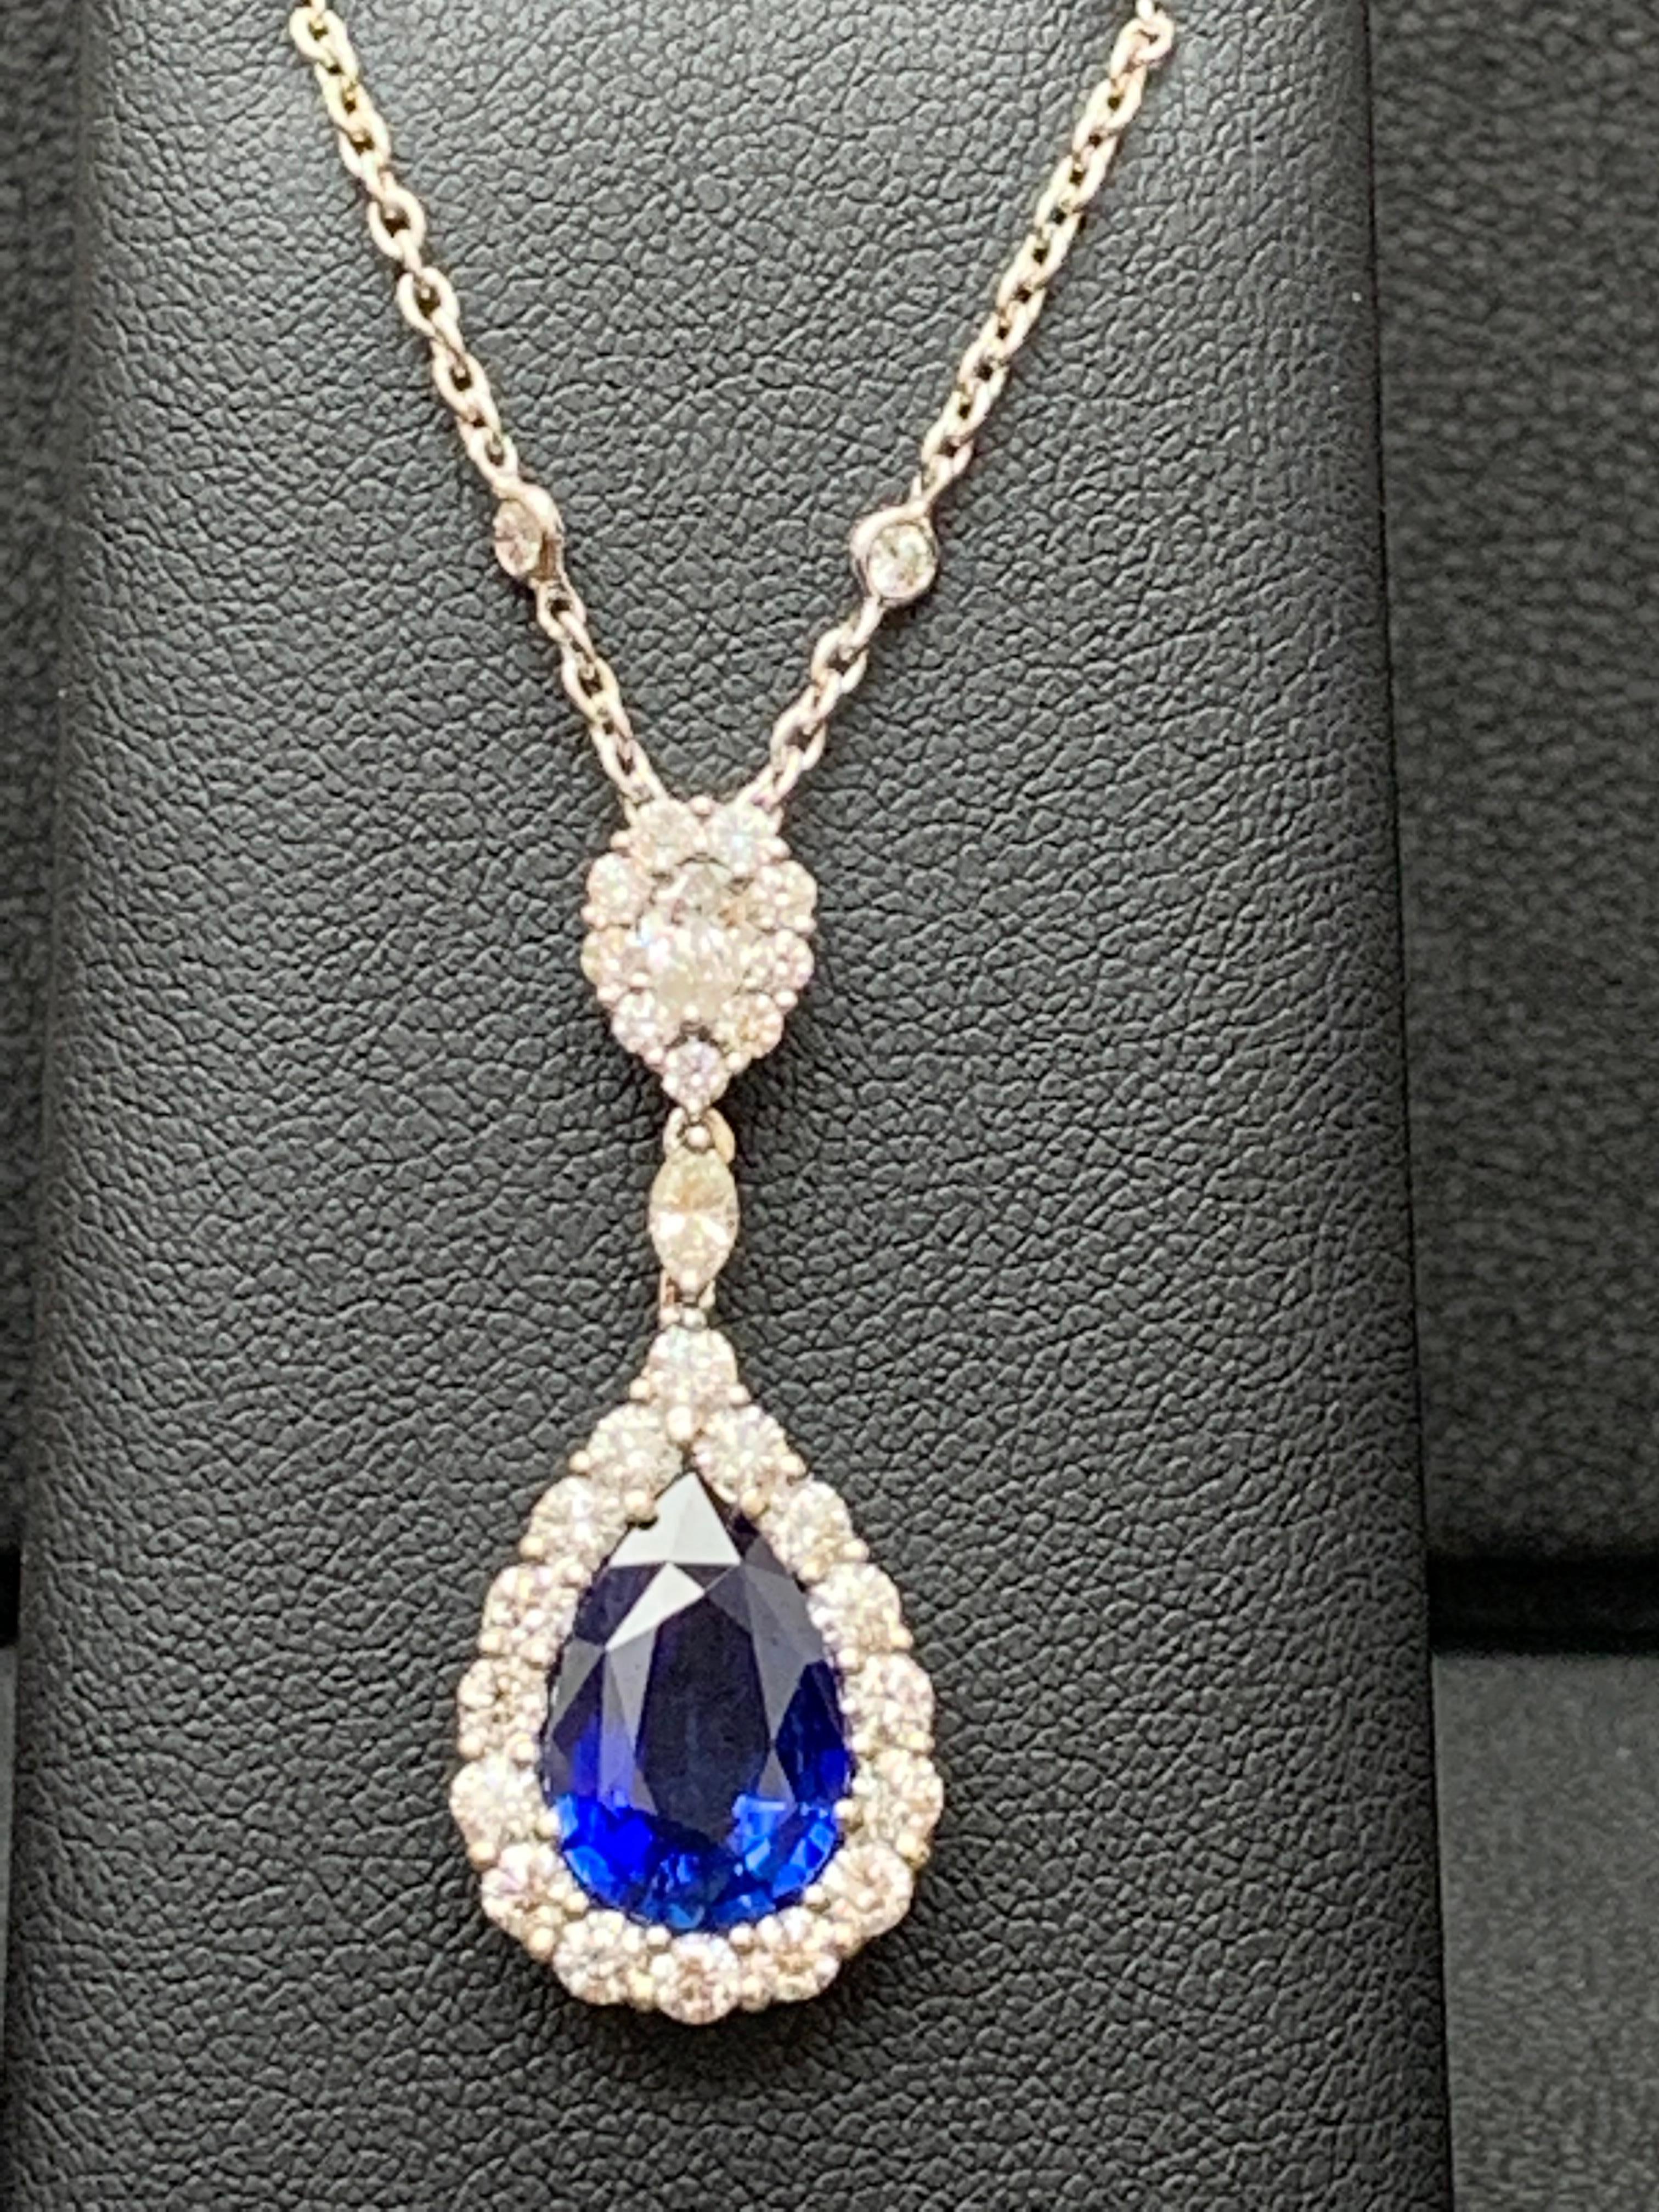 blue saphire pendant